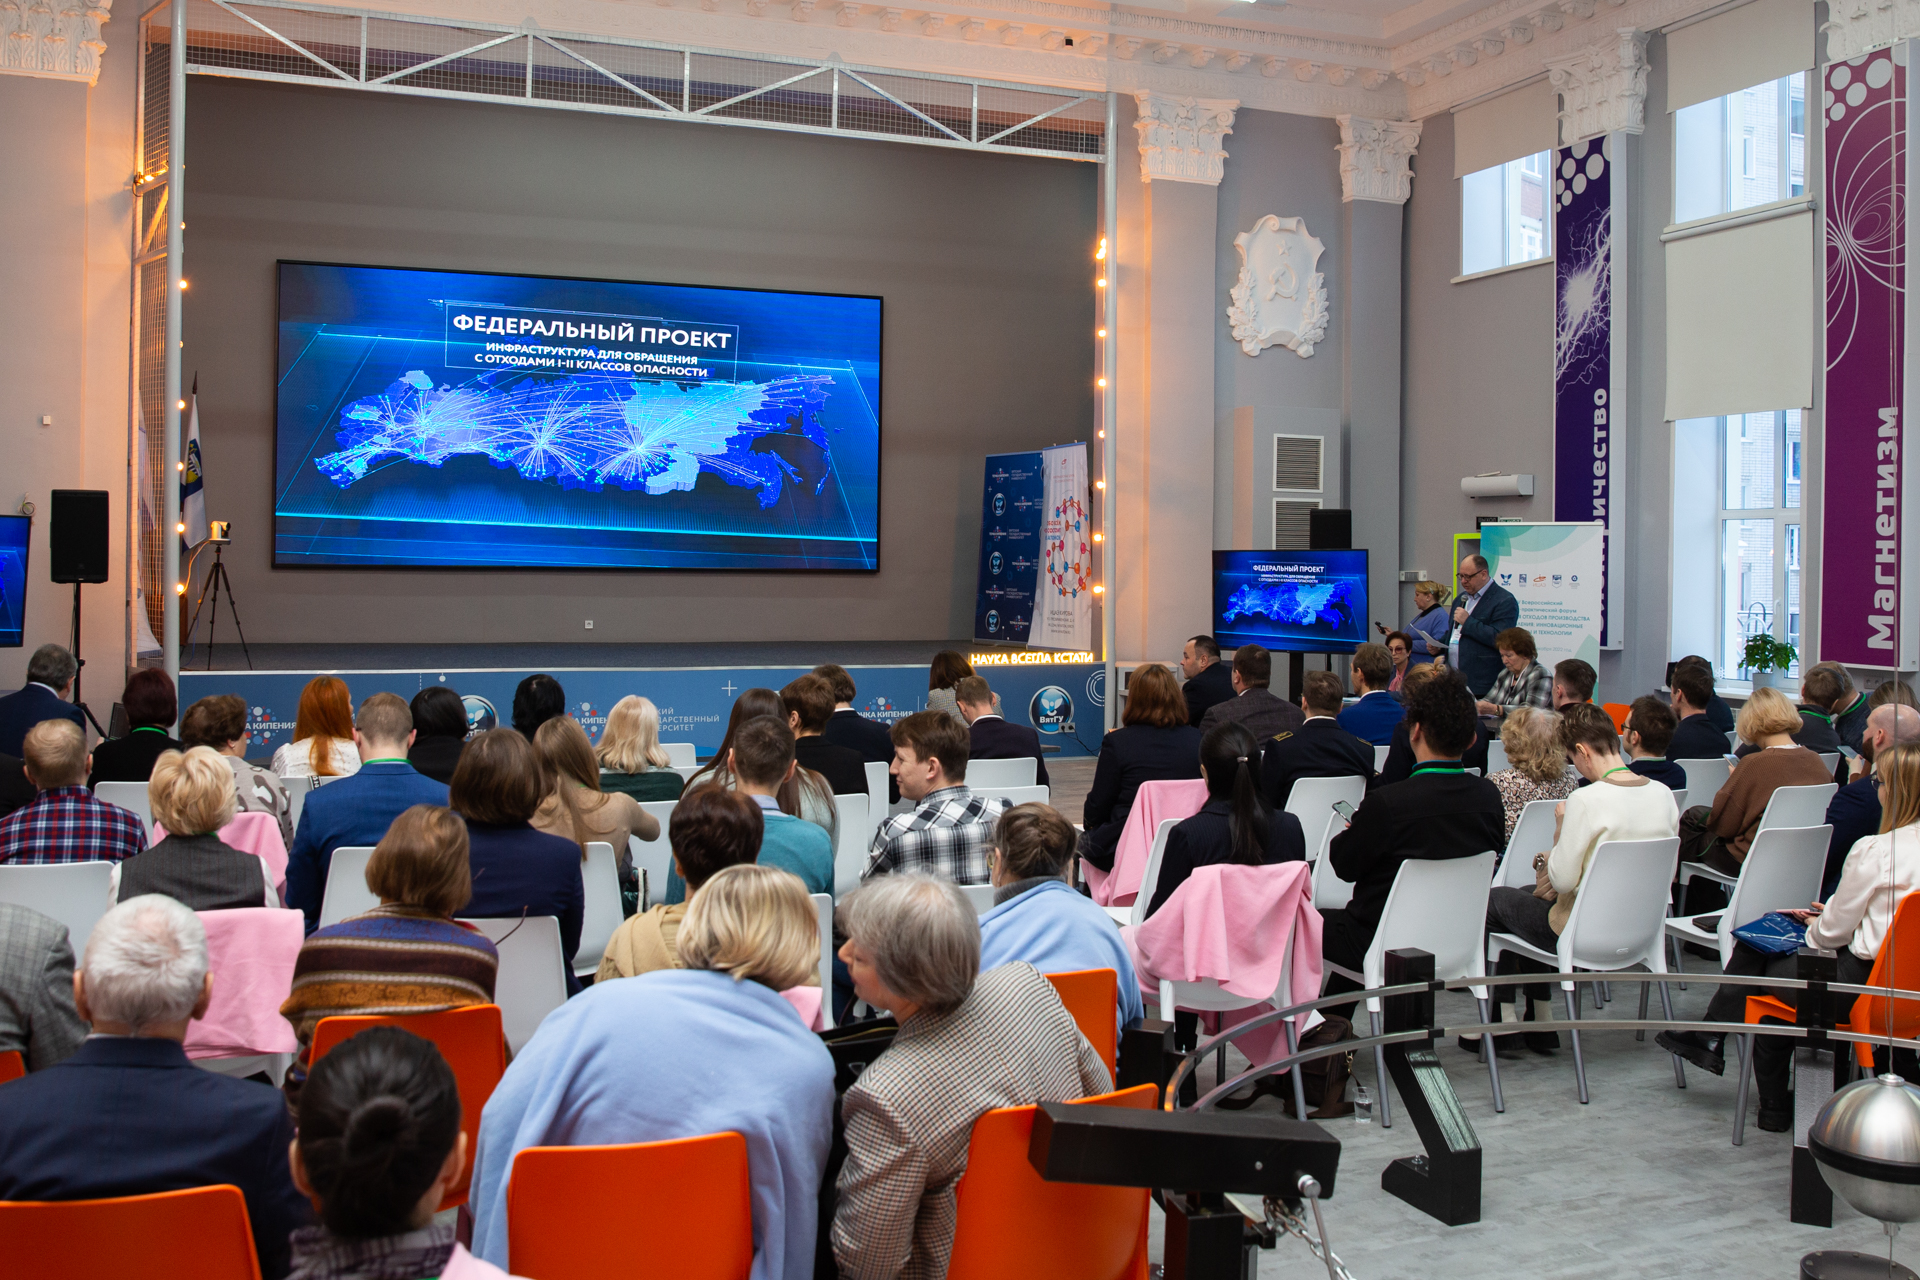 Ученые, представители органов власти и бизнес-сообщества со всей России на площадке ВятГУ обсудили технологии переработки отходов с получением новой продукции